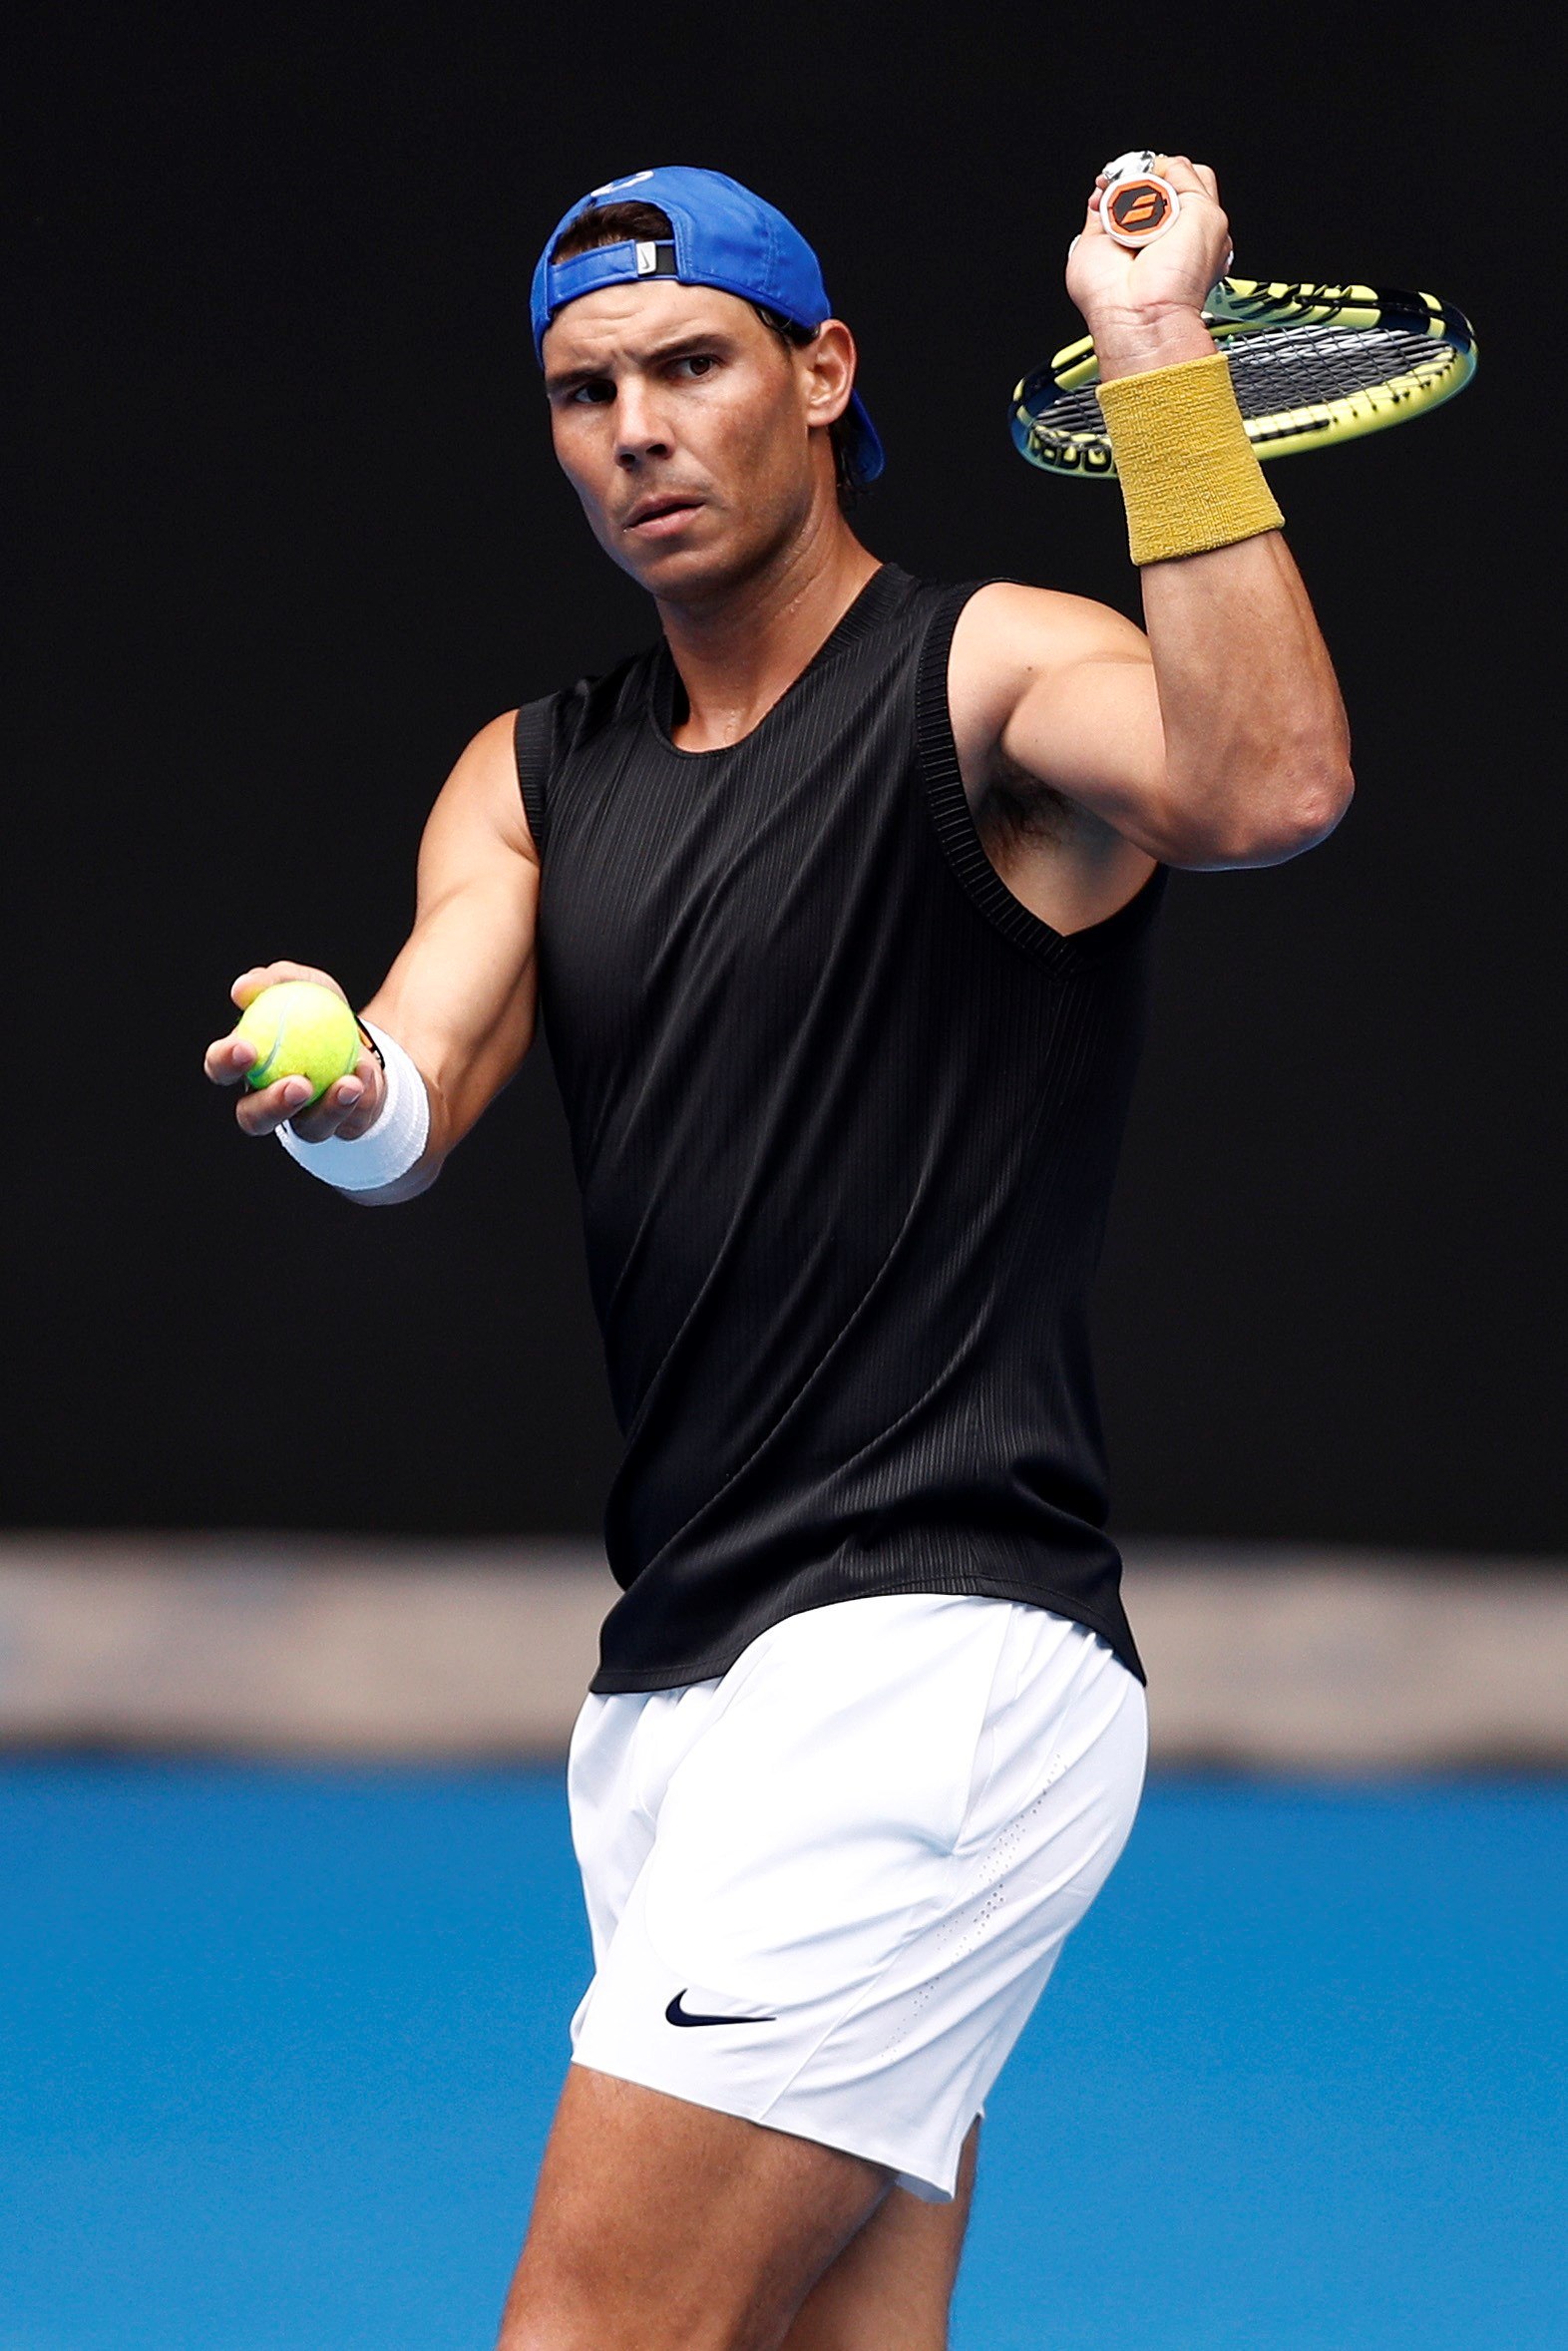 Rafael Nadal Practice 2019 - 1572x2357 Wallpaper 